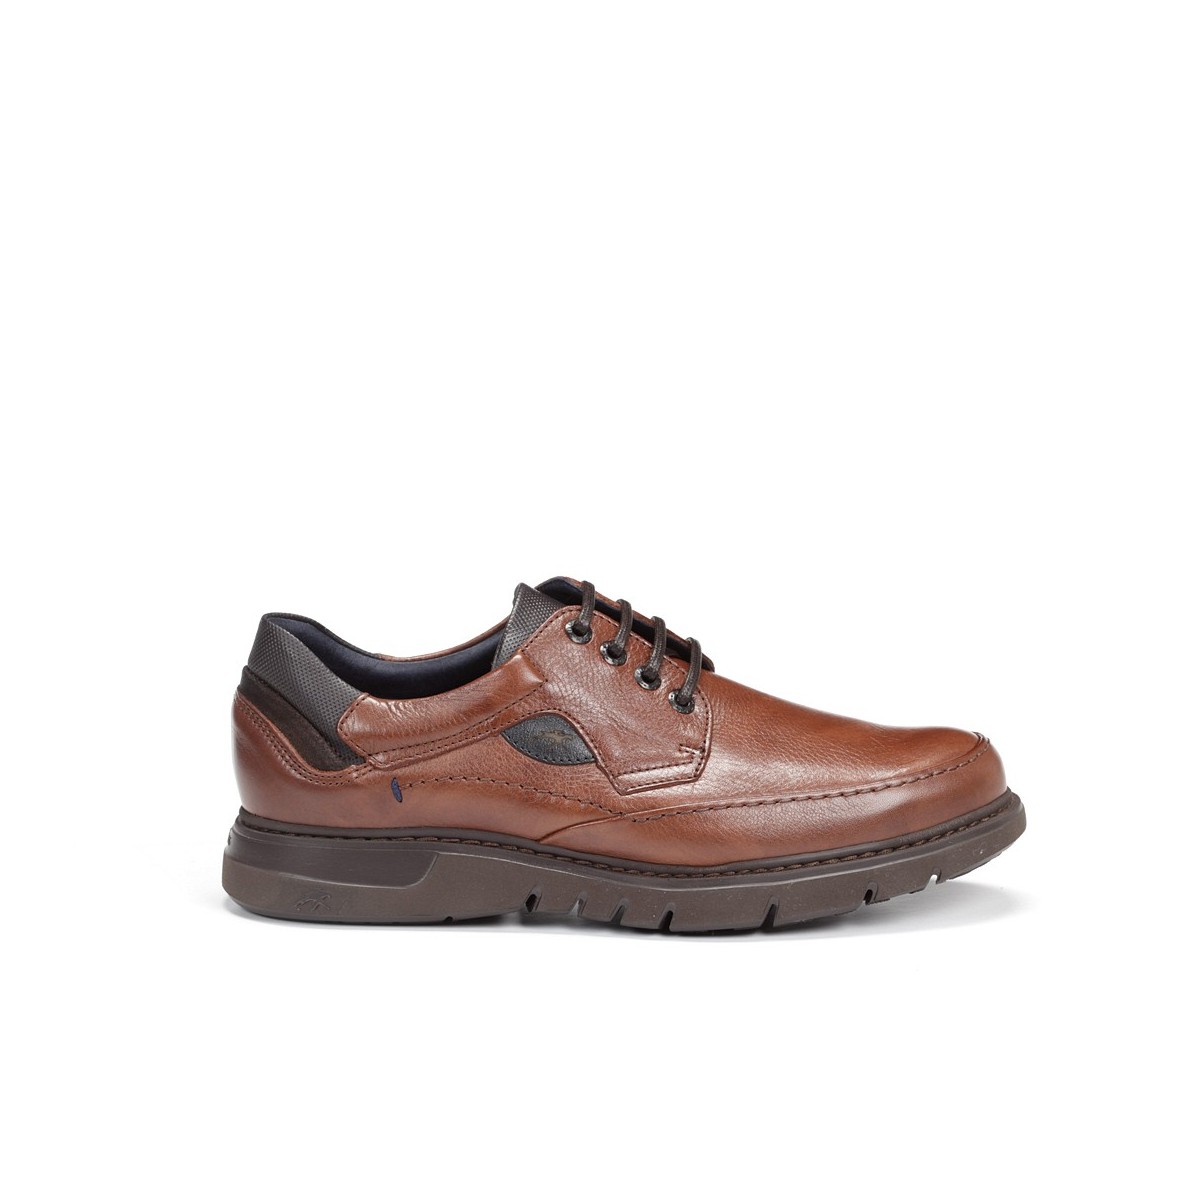 Fluchos zapato con cordones ligeros color marrón hombre Salvate F0248